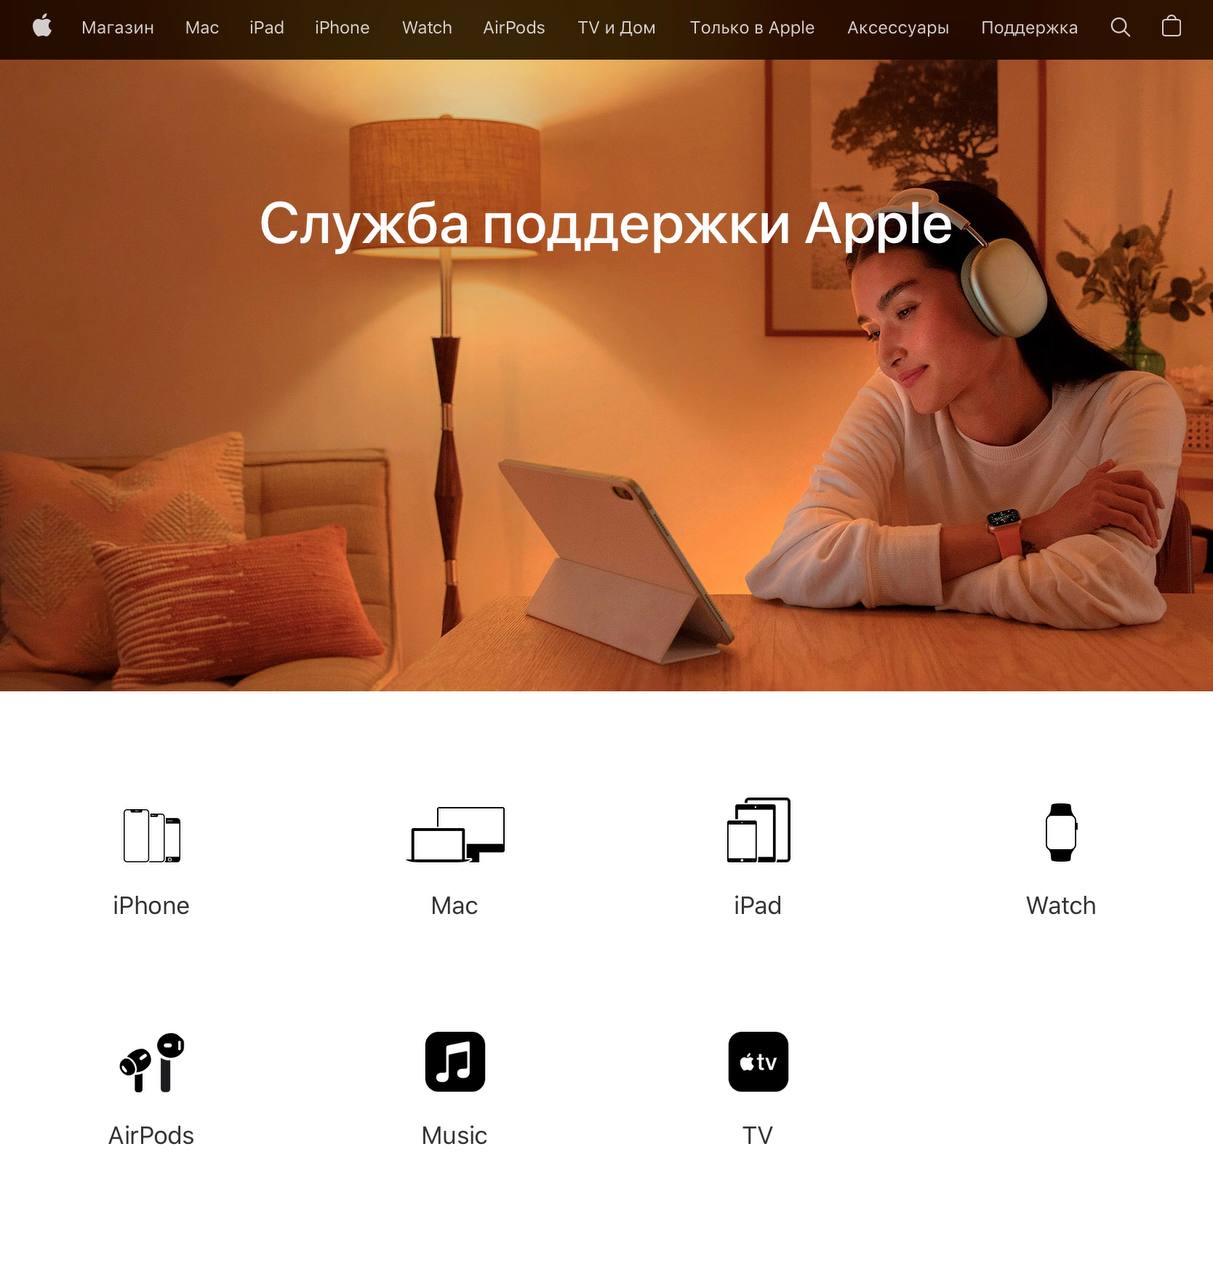 Так теперь выглядит главная страница сайта Apple Россия